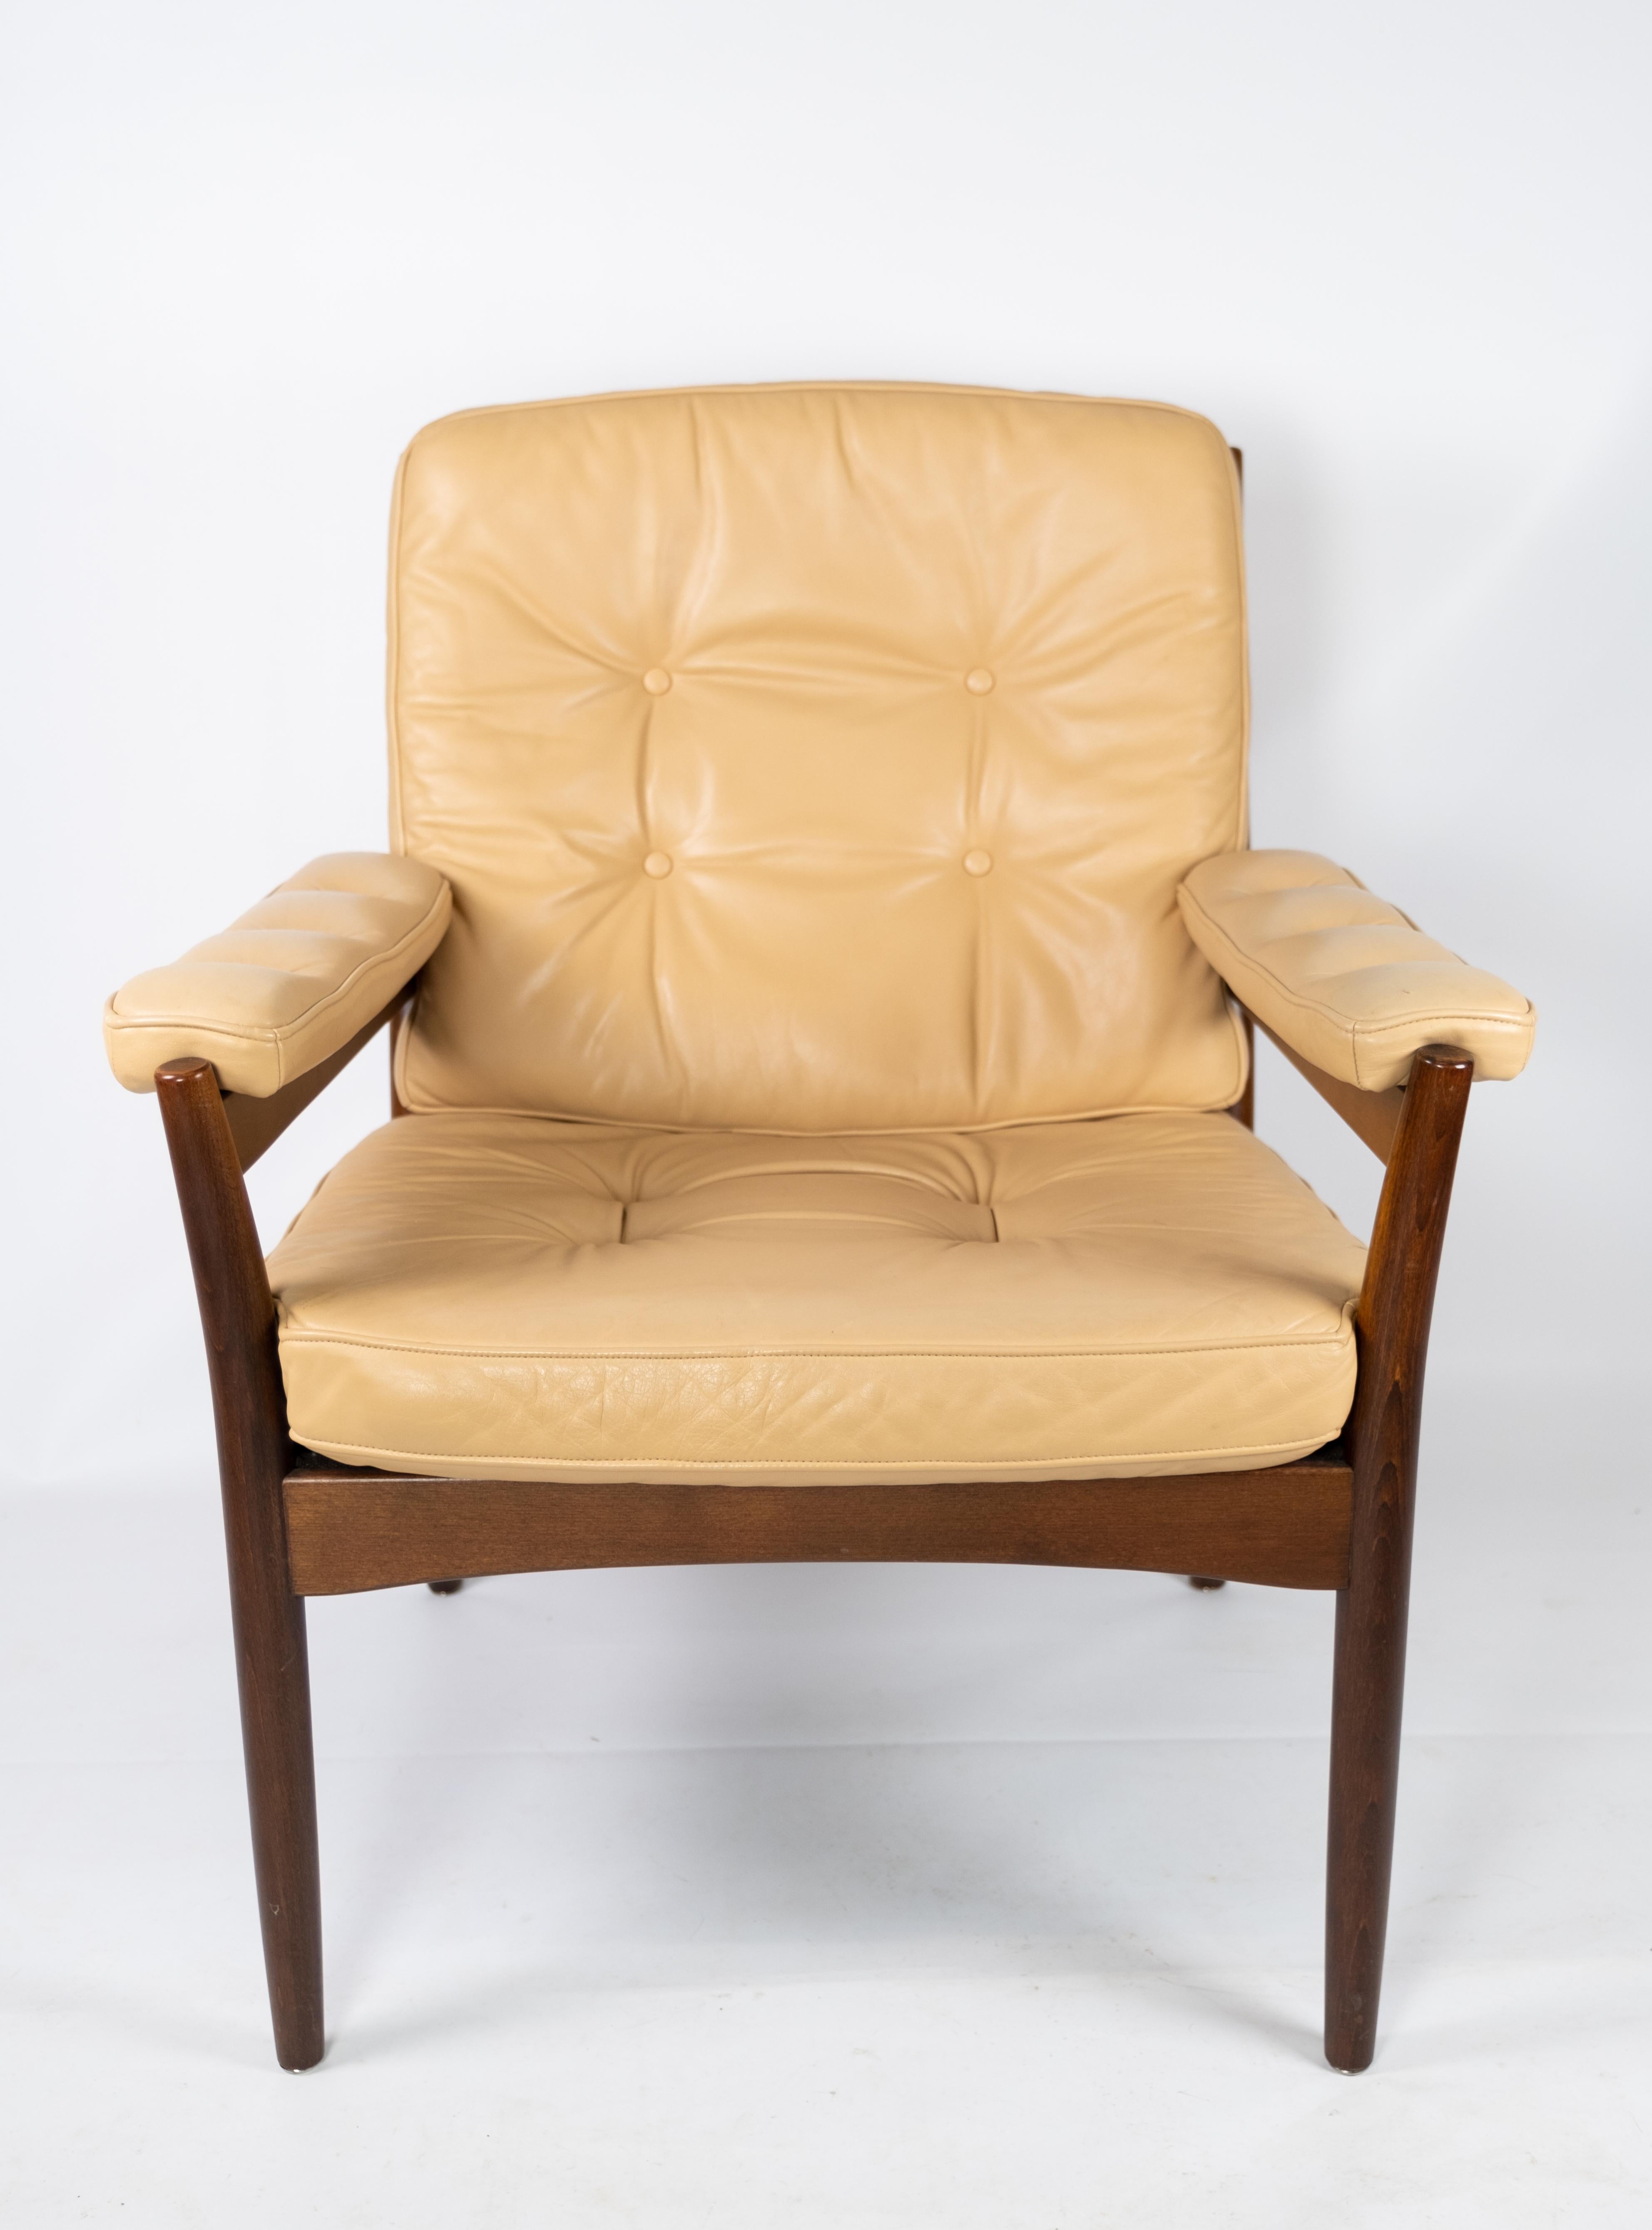 Fauteuil en bois foncé et tapissé de cuir clair et élégant de conception danoise des années 1960.Le fauteuil est en très bon état vintage.